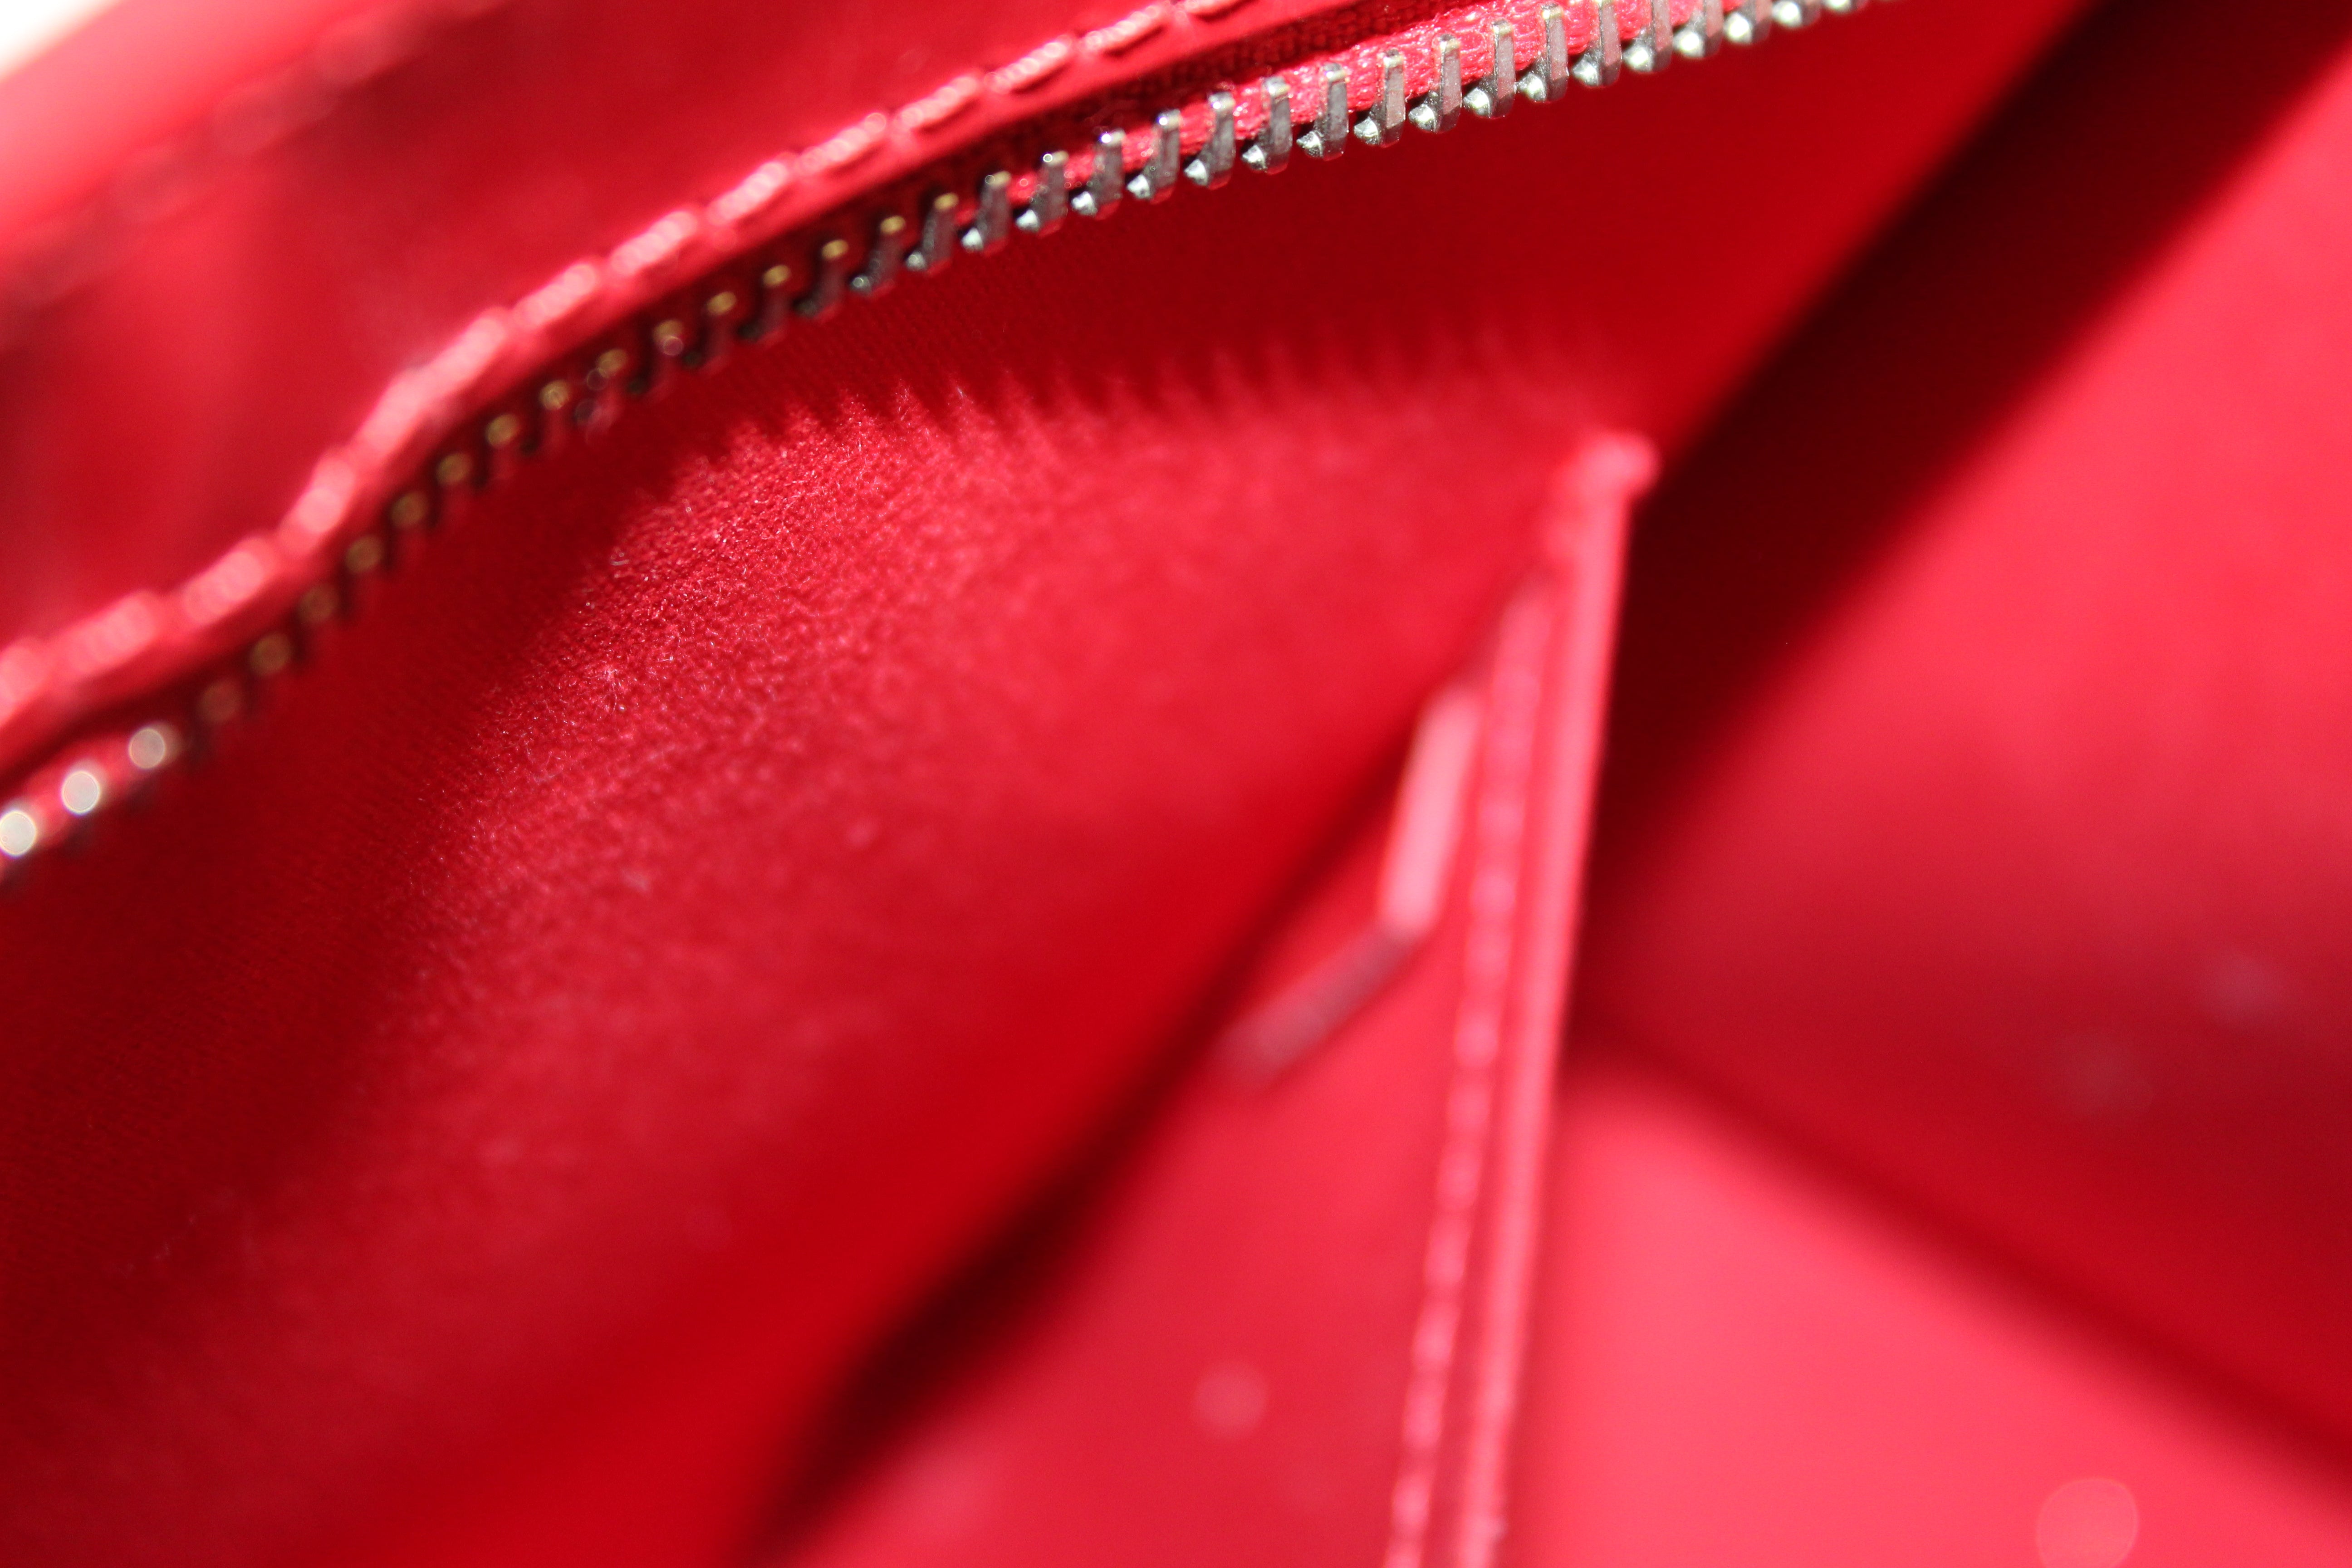 Louis Vuitton Red Epi Leather Madeleine PM Bag Louis Vuitton